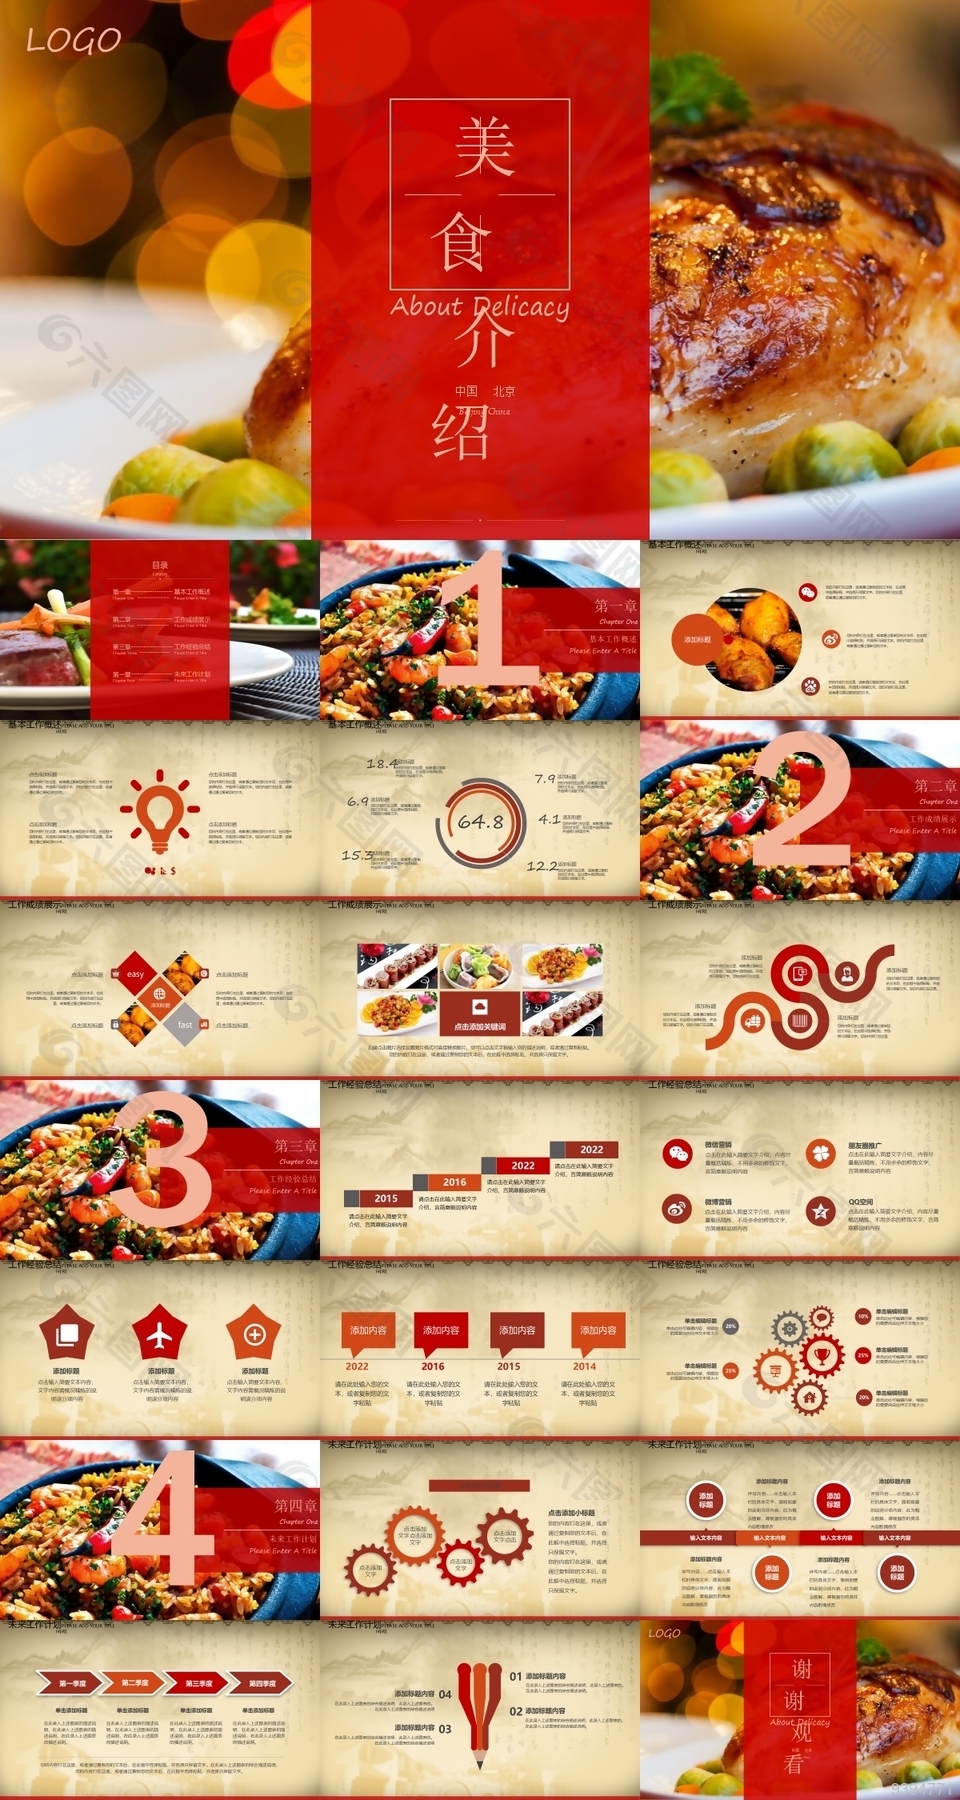 精选中国美食产品介绍展示PPT模板